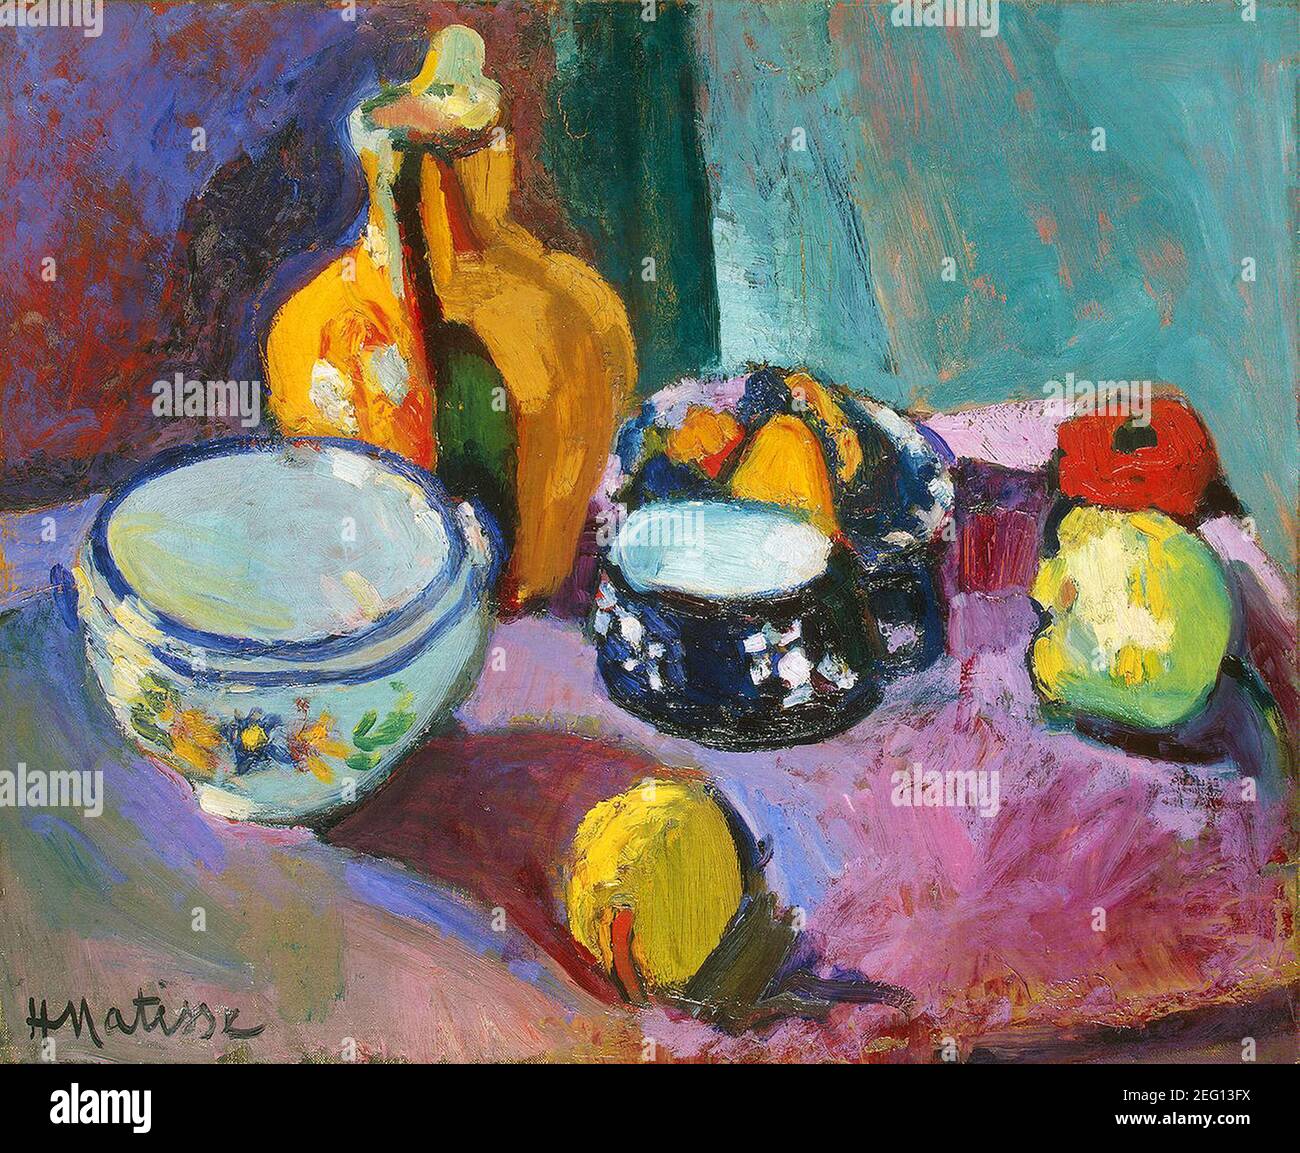 Les plats et les fruits par Henri Matisse 1901. Musée de l'Ermitage à Saint-Pétersbourg, Russie Banque D'Images